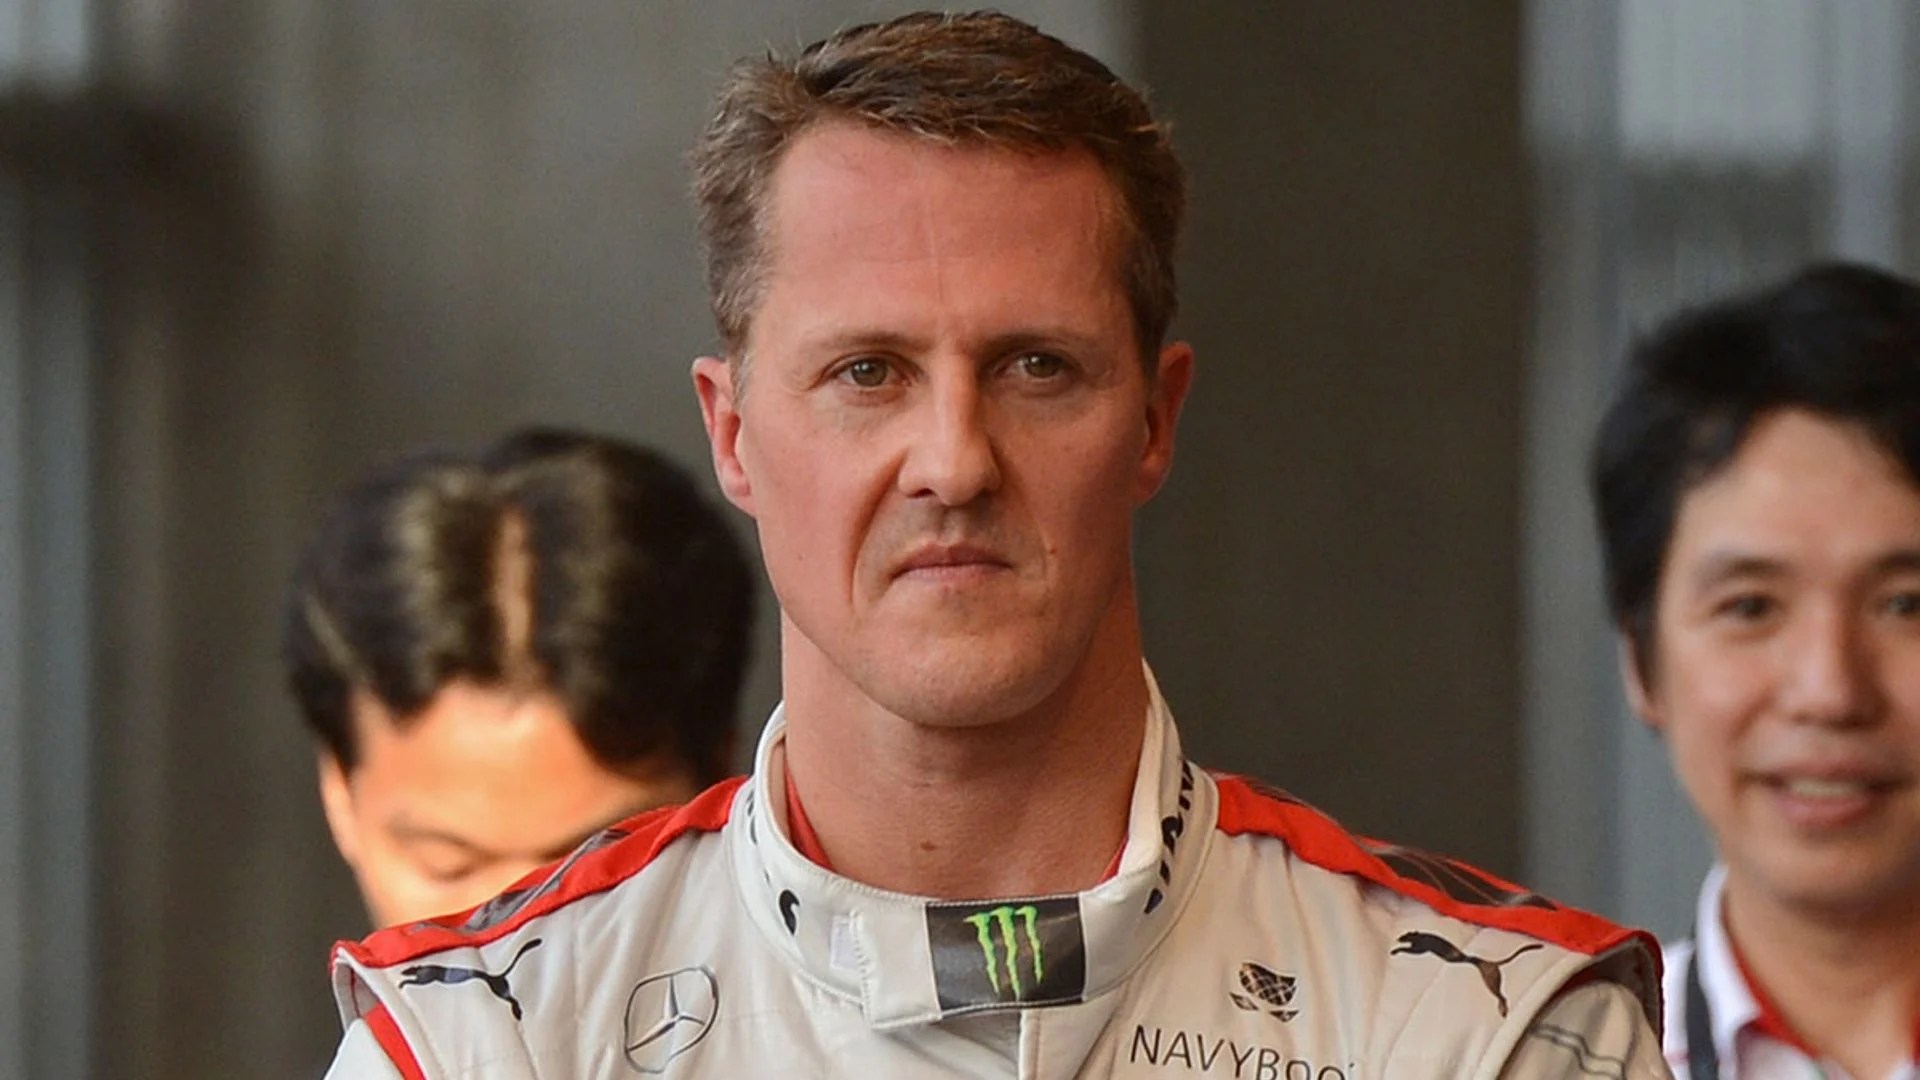 Michael Schumacher S Former Ferrari Boss Gives Rare Update On His